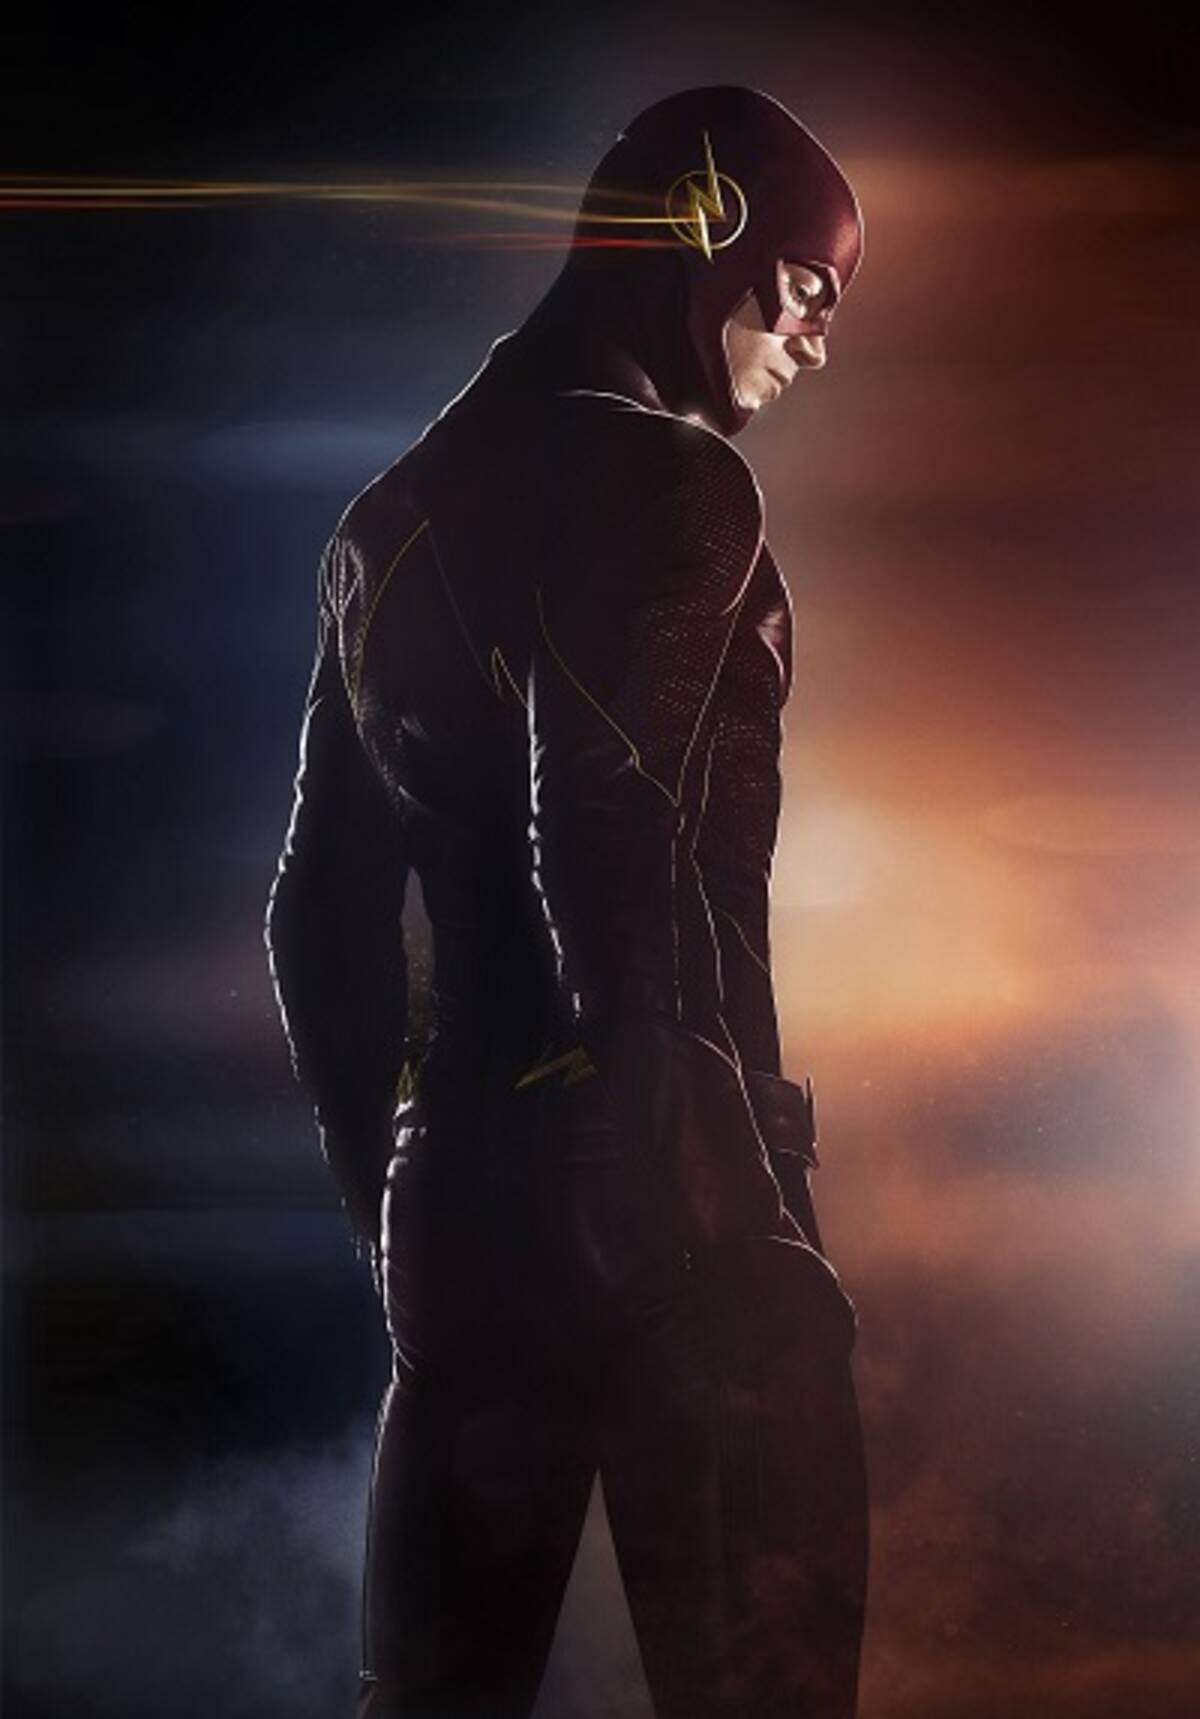 The Flash シーズン2 超高速で移動する女性キャラクターが登場 2015年8月28日 エキサイトニュース